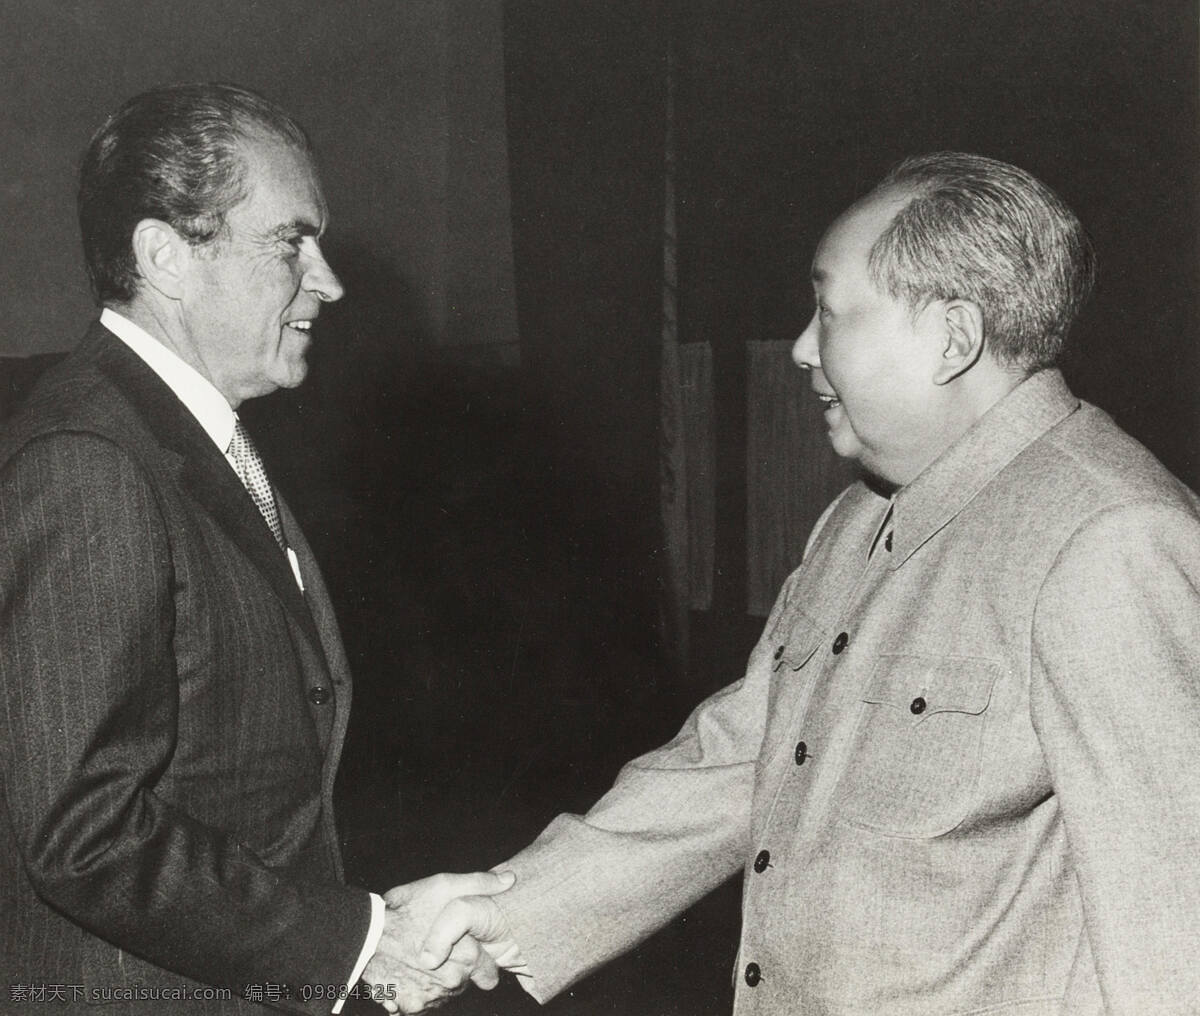 尼克松 访问 中国 1972年 毛主席 美国总统 历史性会晤 中美建交 老照片 人物摄影 人物图库